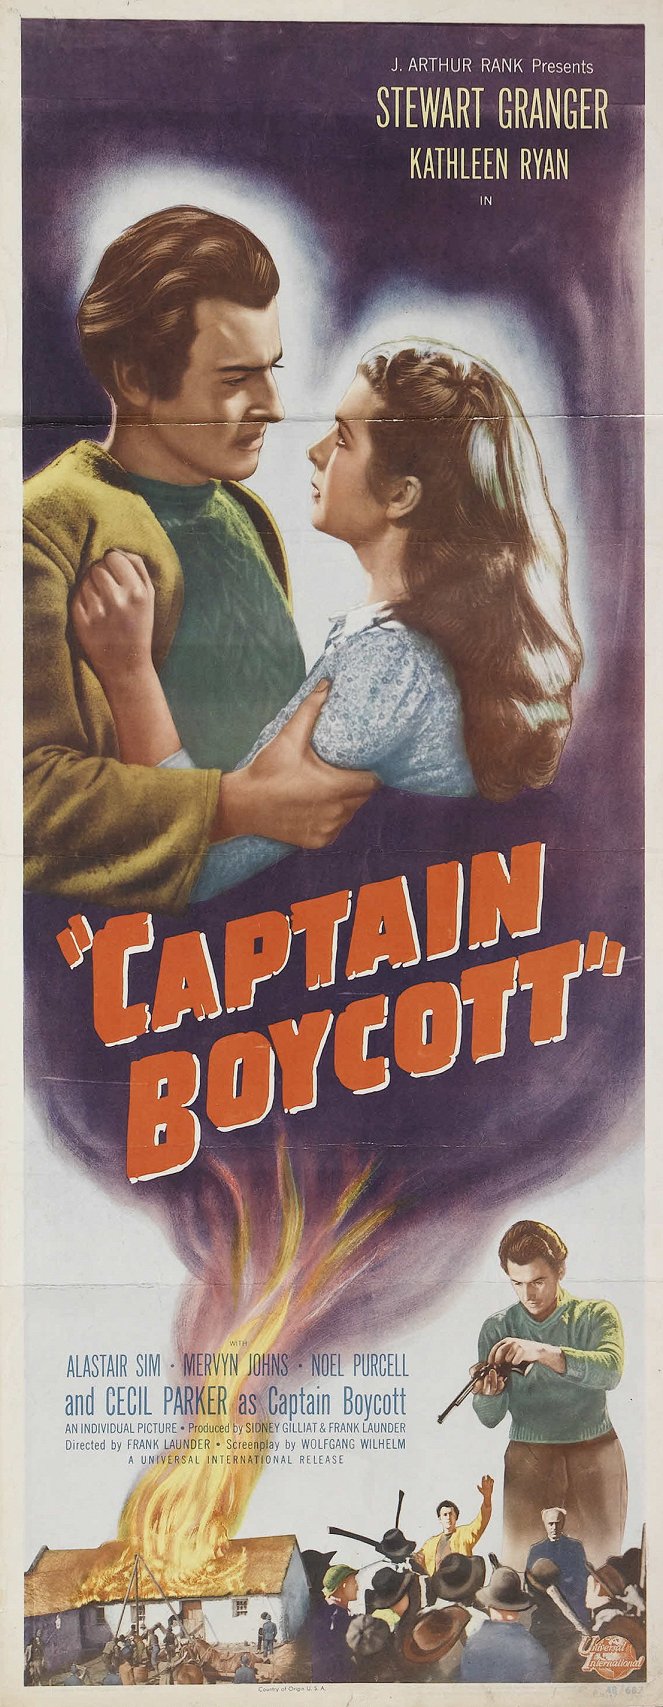 Captain Boycott - Posters